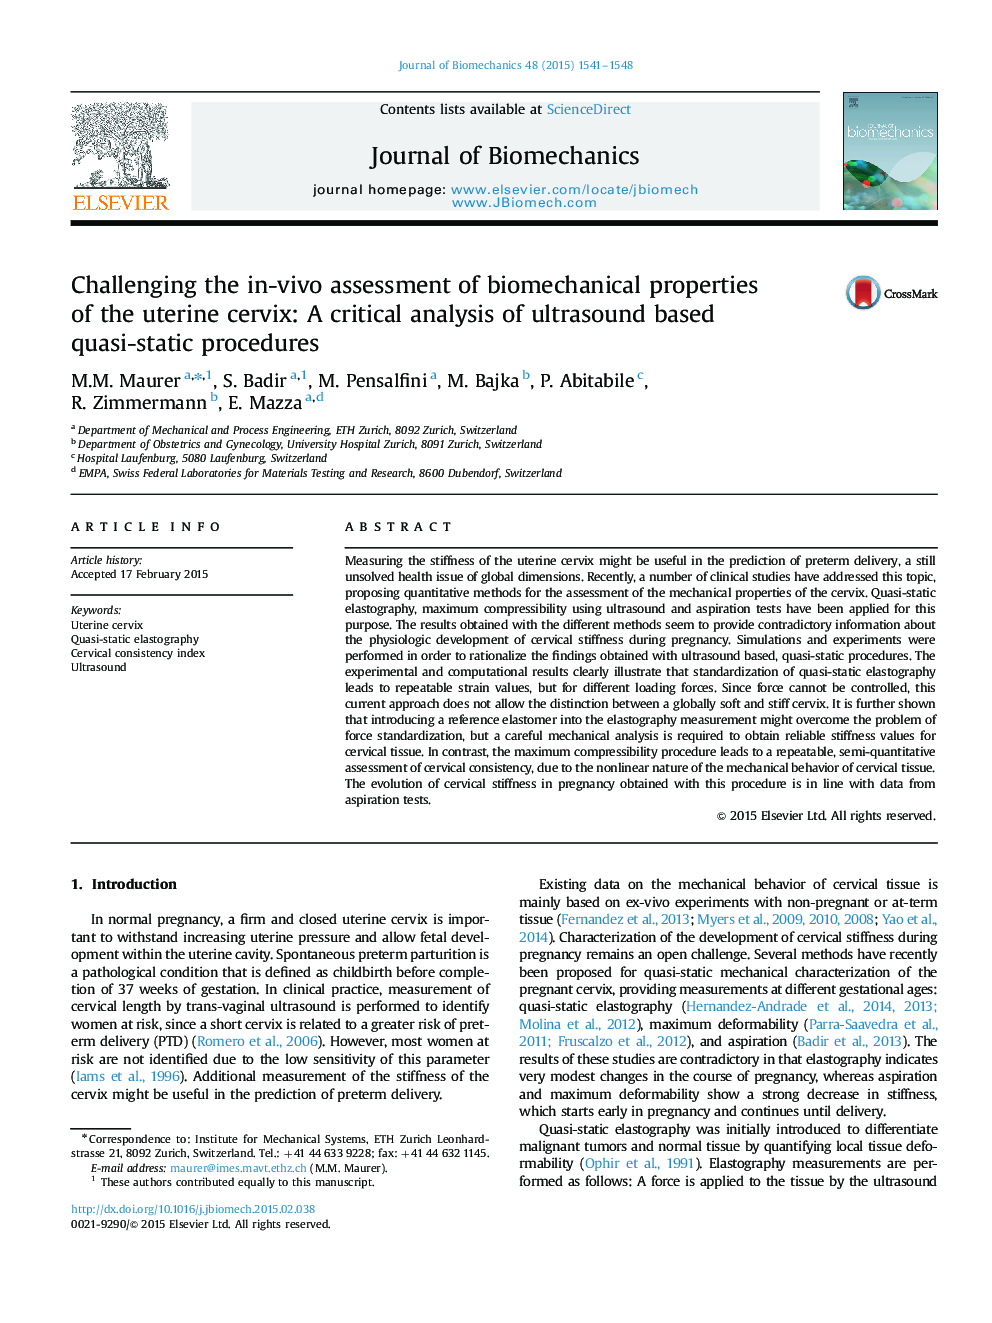 بررسی چگونگی ارزیابی خواص بیومکانیکی رحم در داخل بیمار: یک تحلیل انتقادی از روشهای نیمه استاتیک مبتنی بر سونوگرافی 